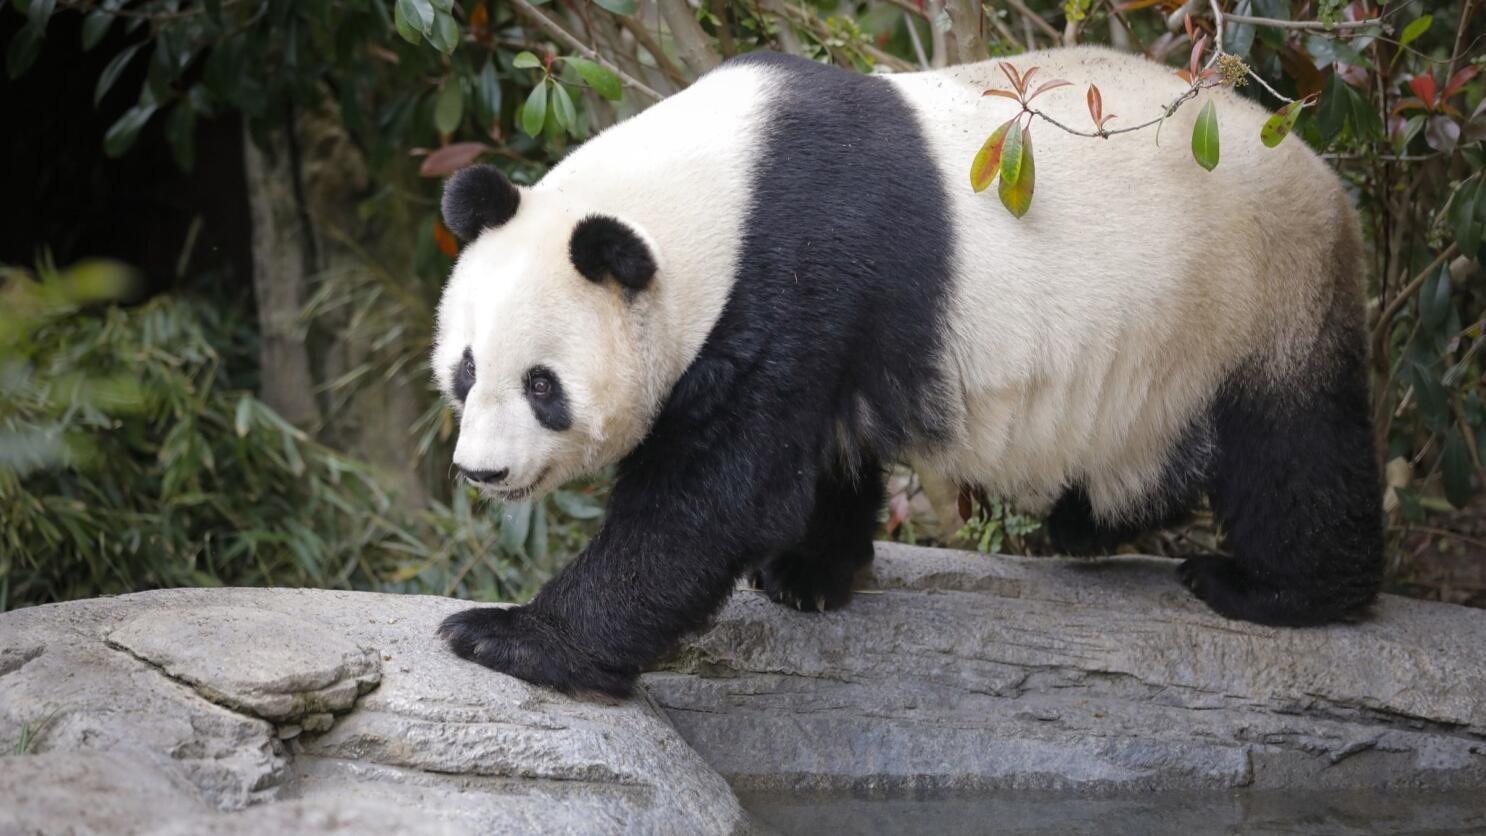 panda sitting front view